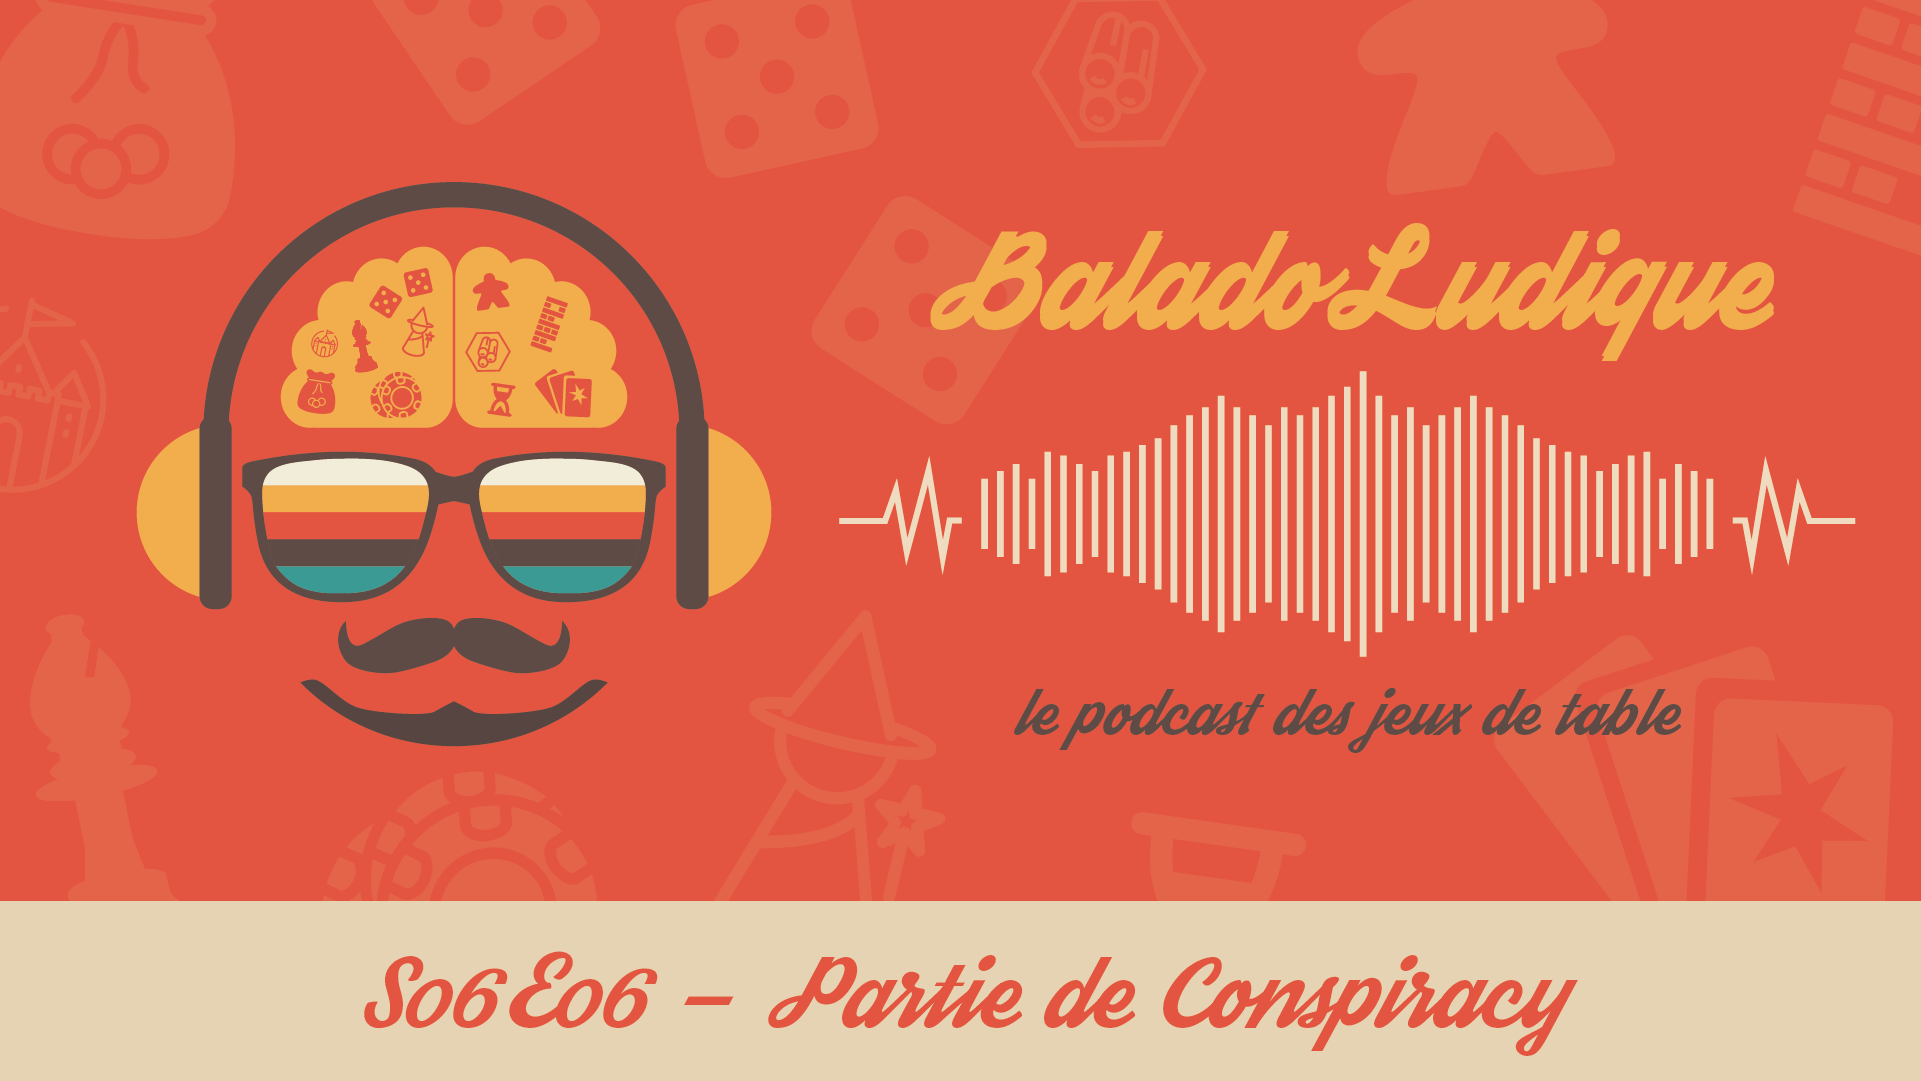 Conspiracy - BaladoLudique - s06-e06